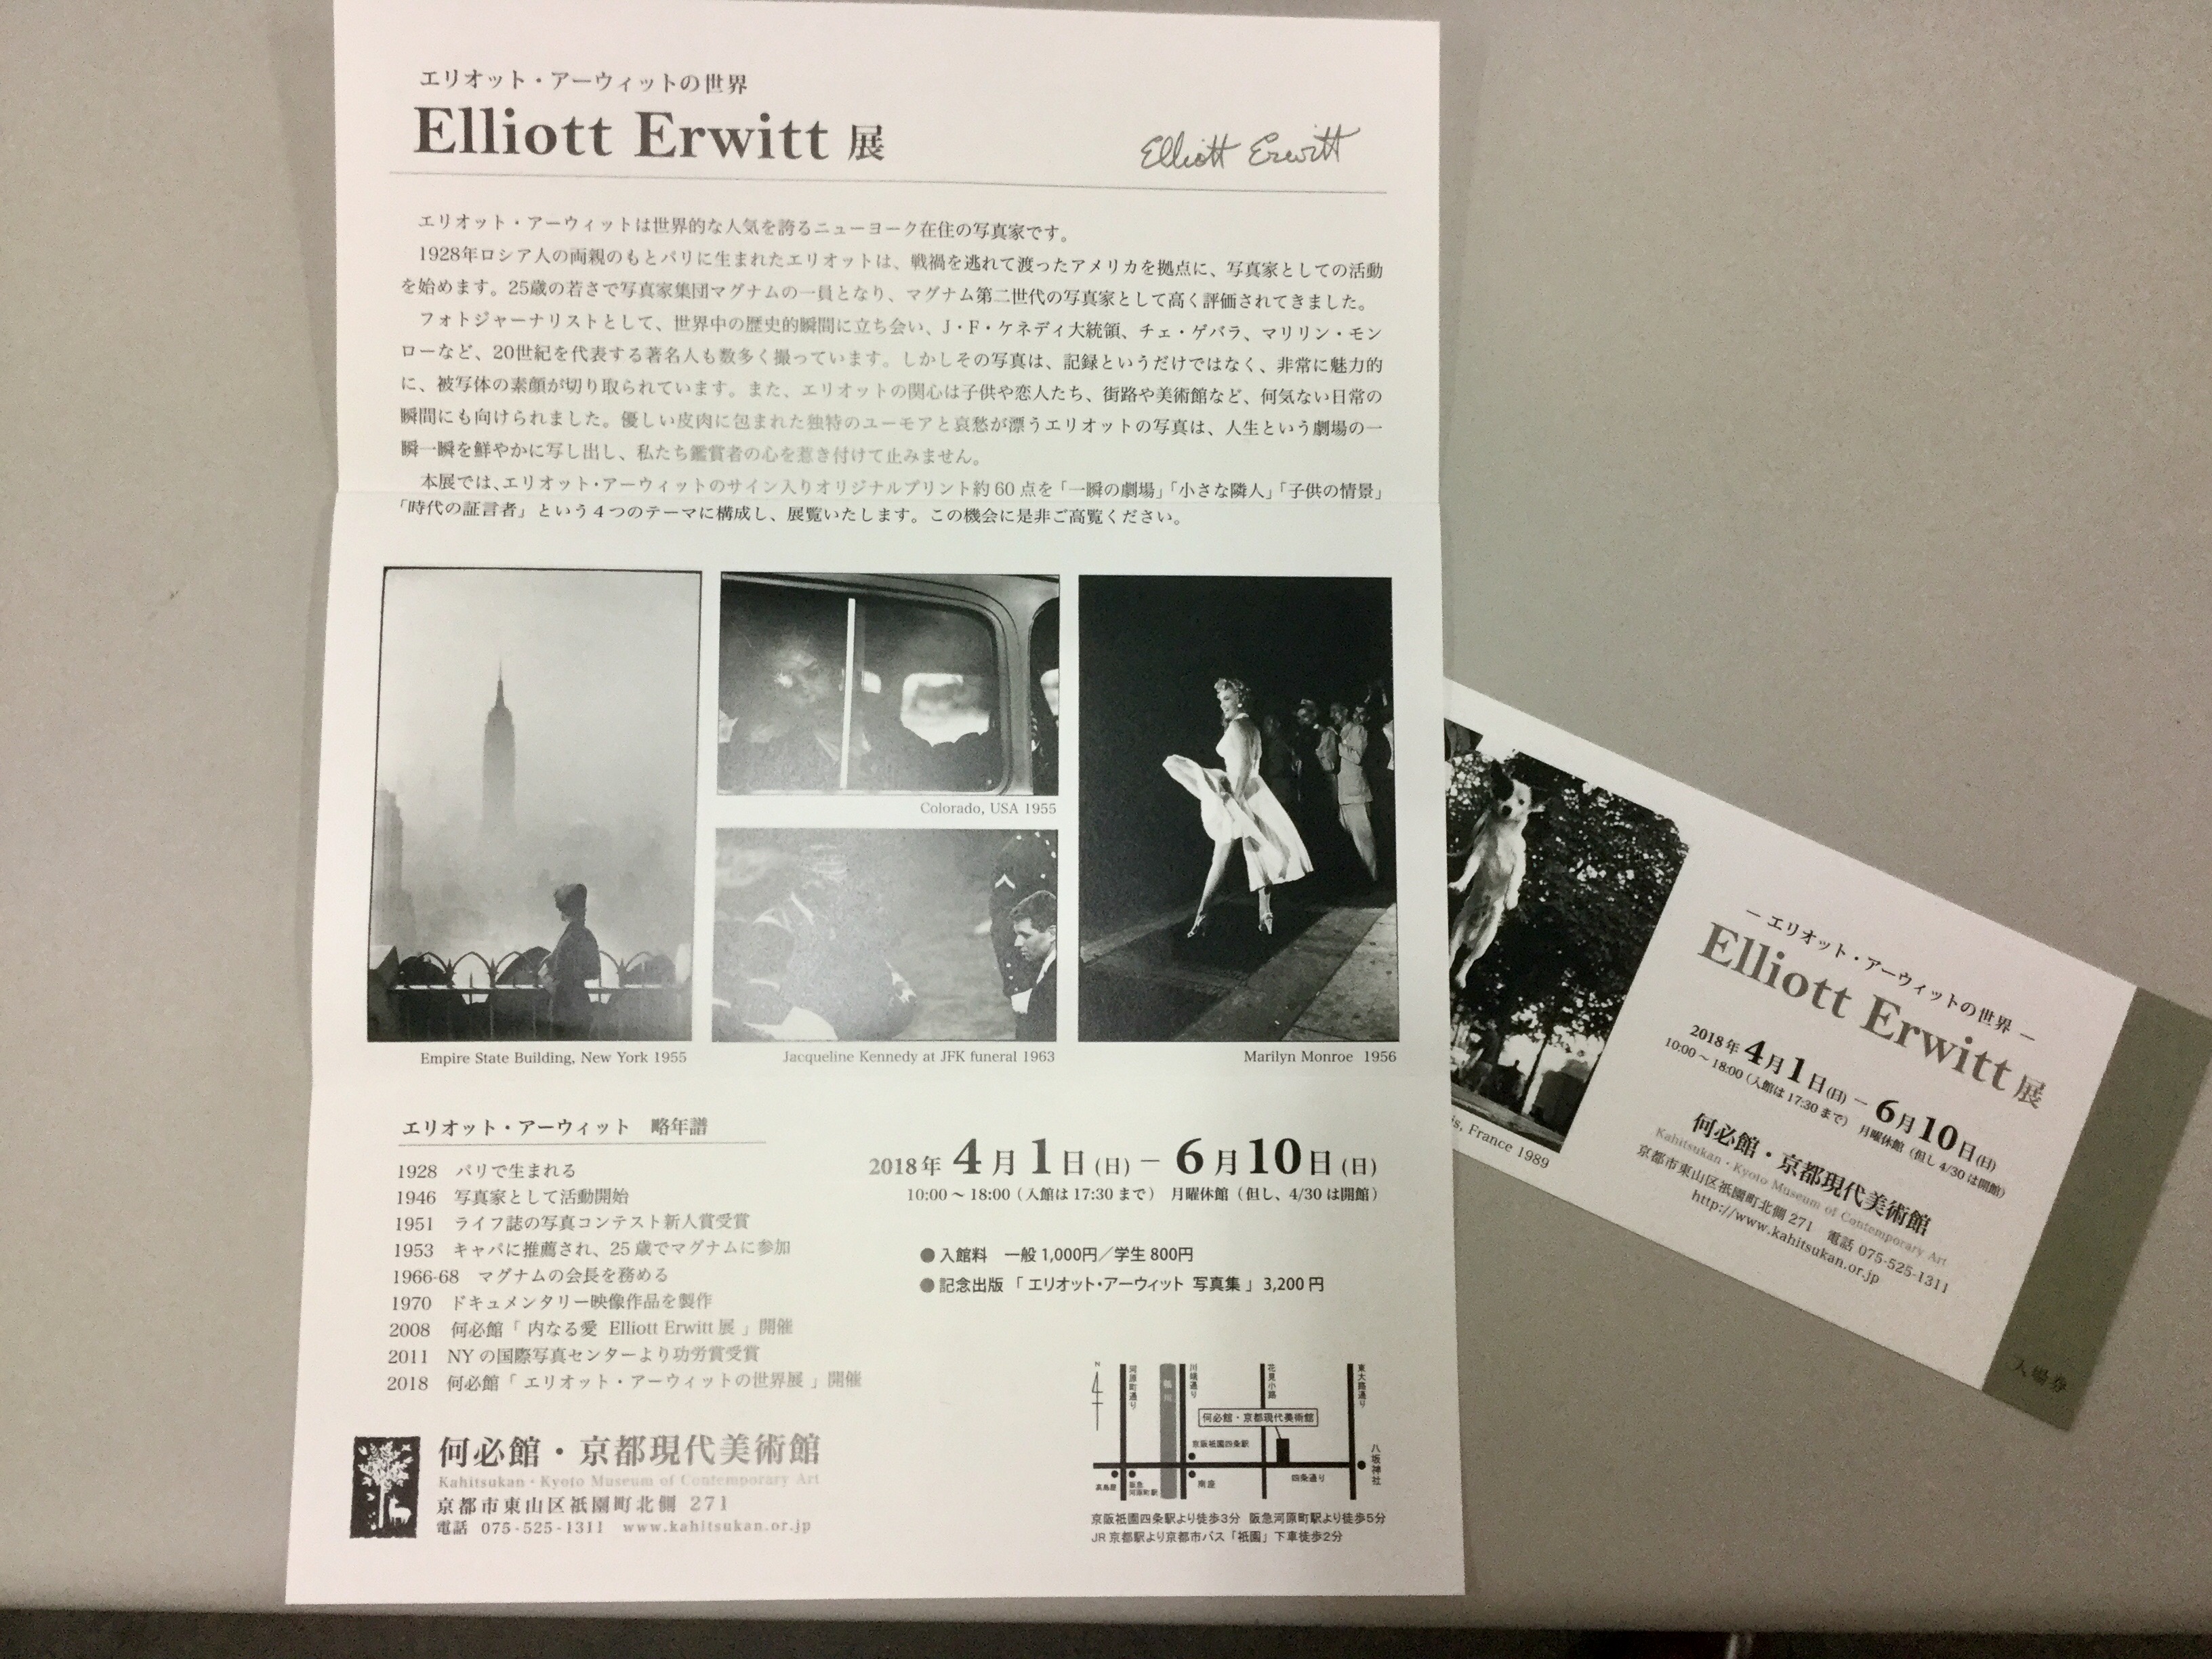 「Elliott Erwitt」展